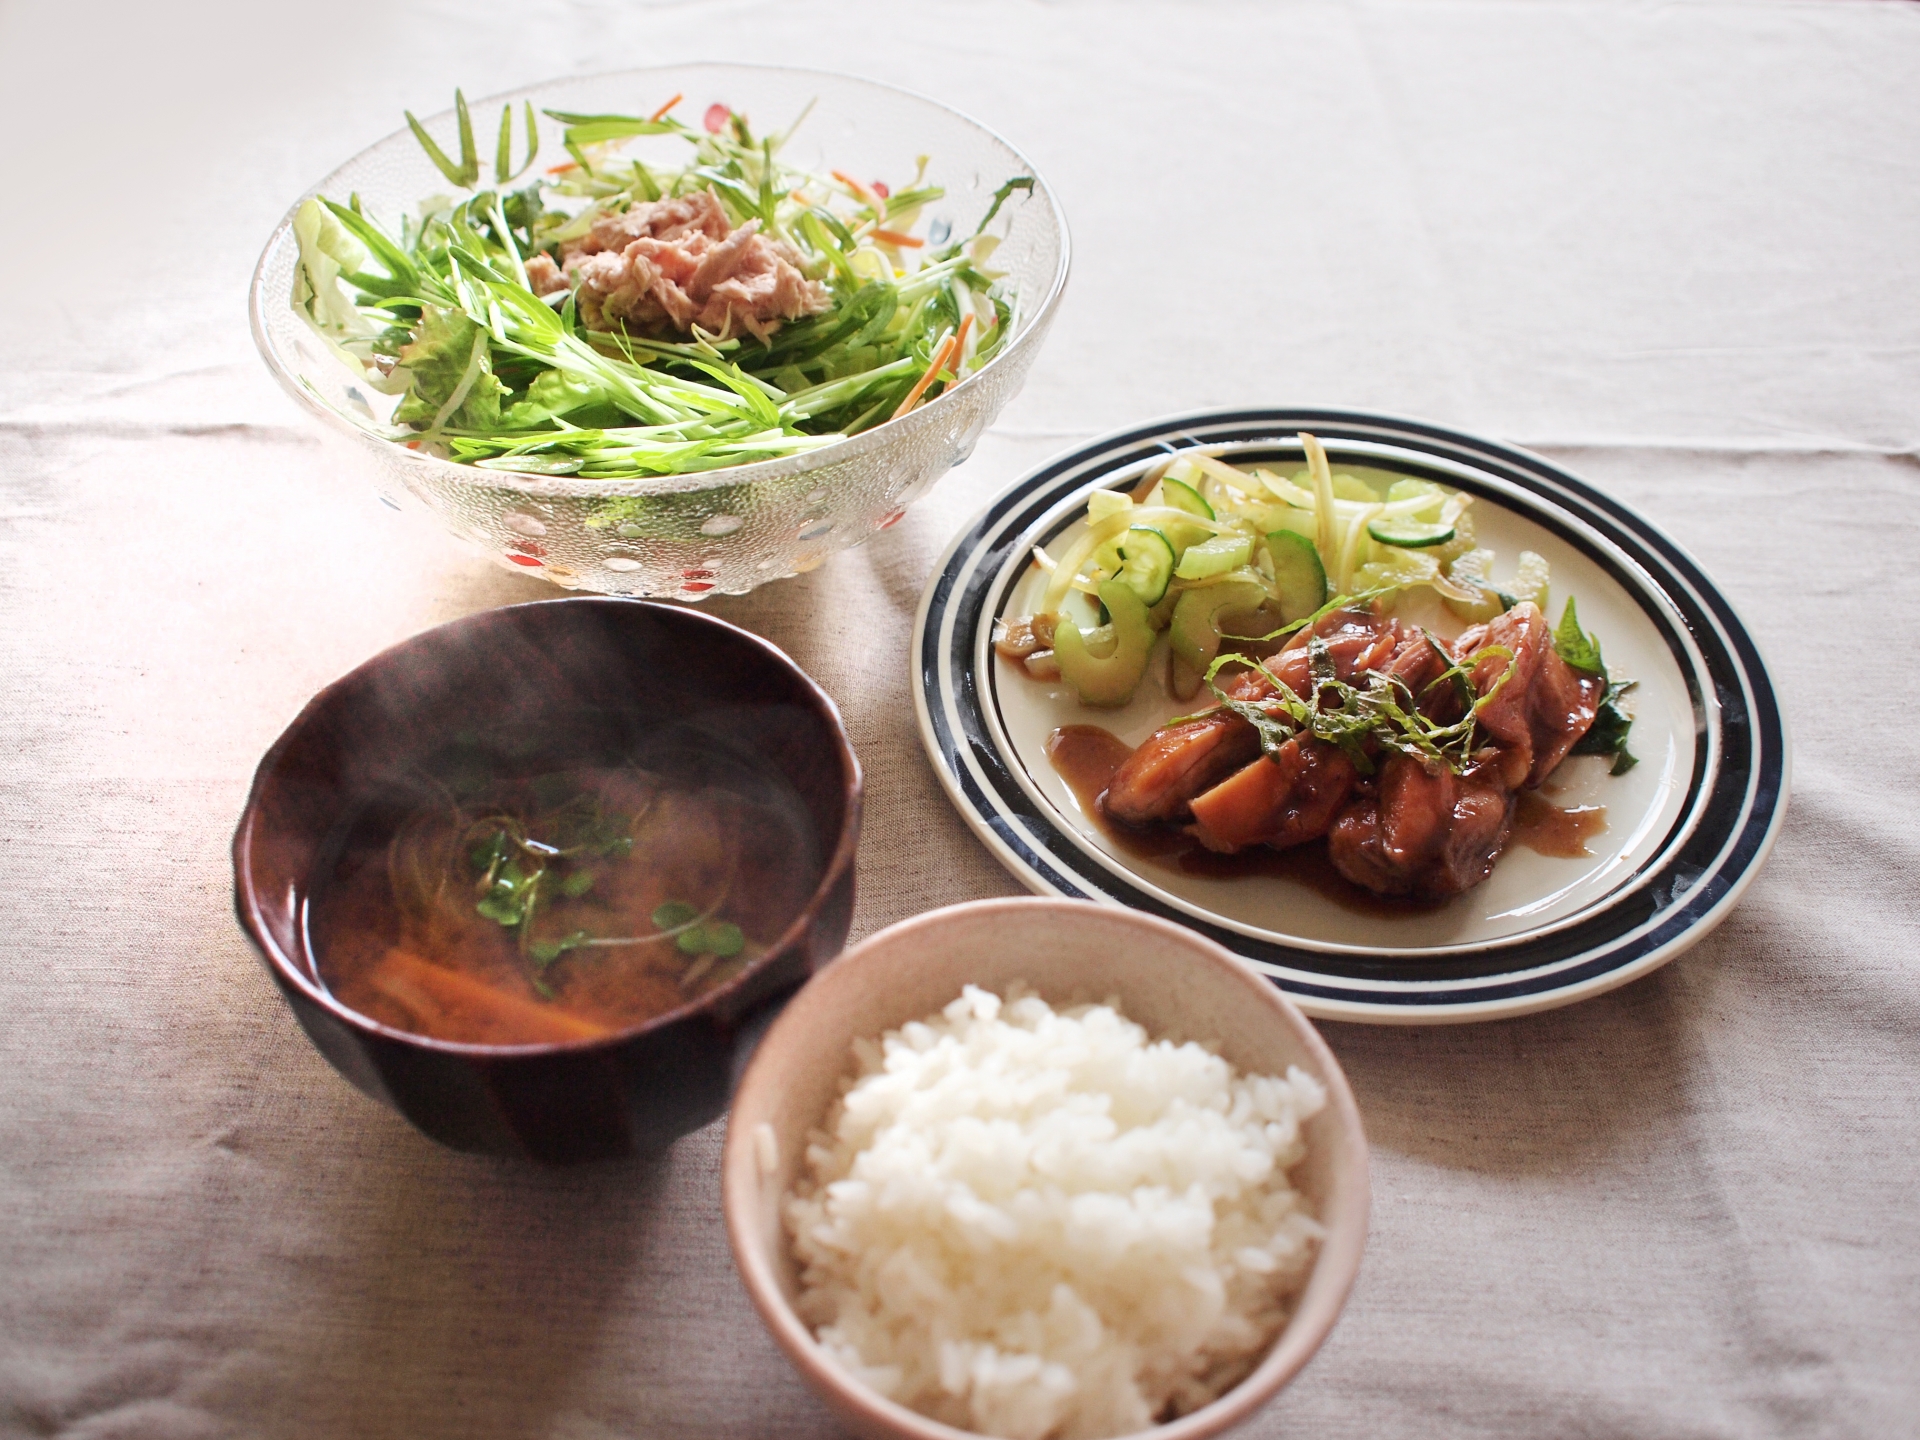 きょうの料理 ゆで鶏のみそ漬け焼きのレシピ 笠原将弘 3月2日 きなこのレビューブログ